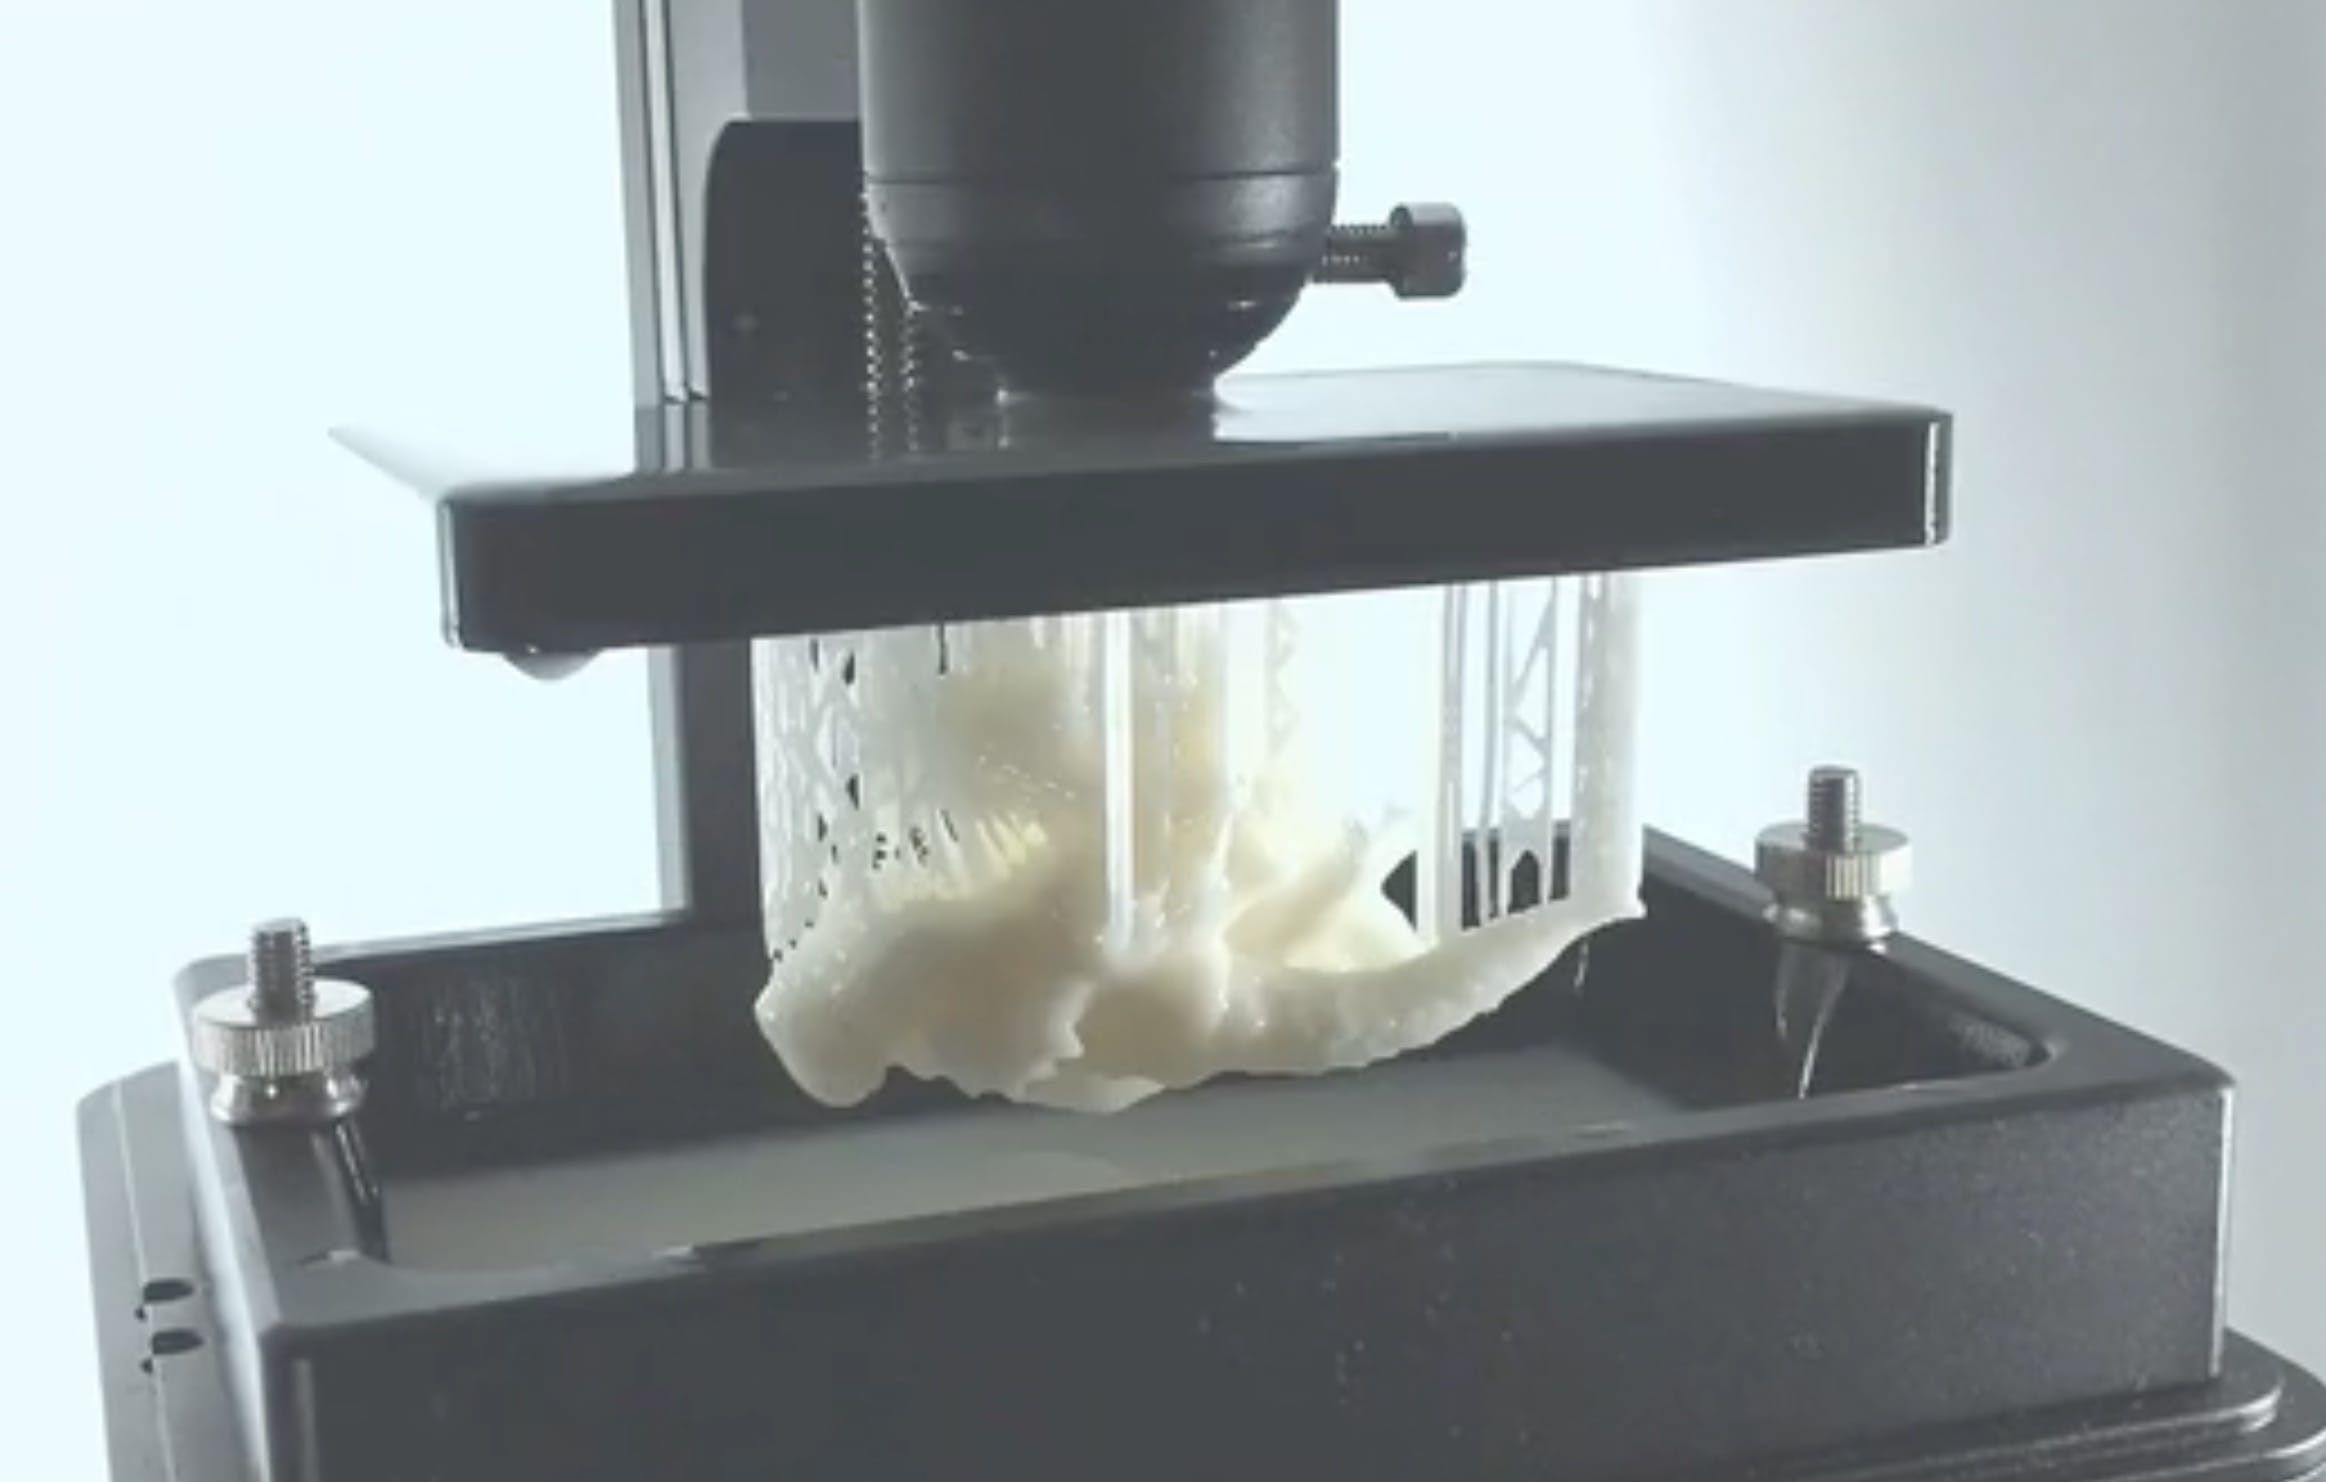  The D2K Insight desktop 3D printer completing a print job 